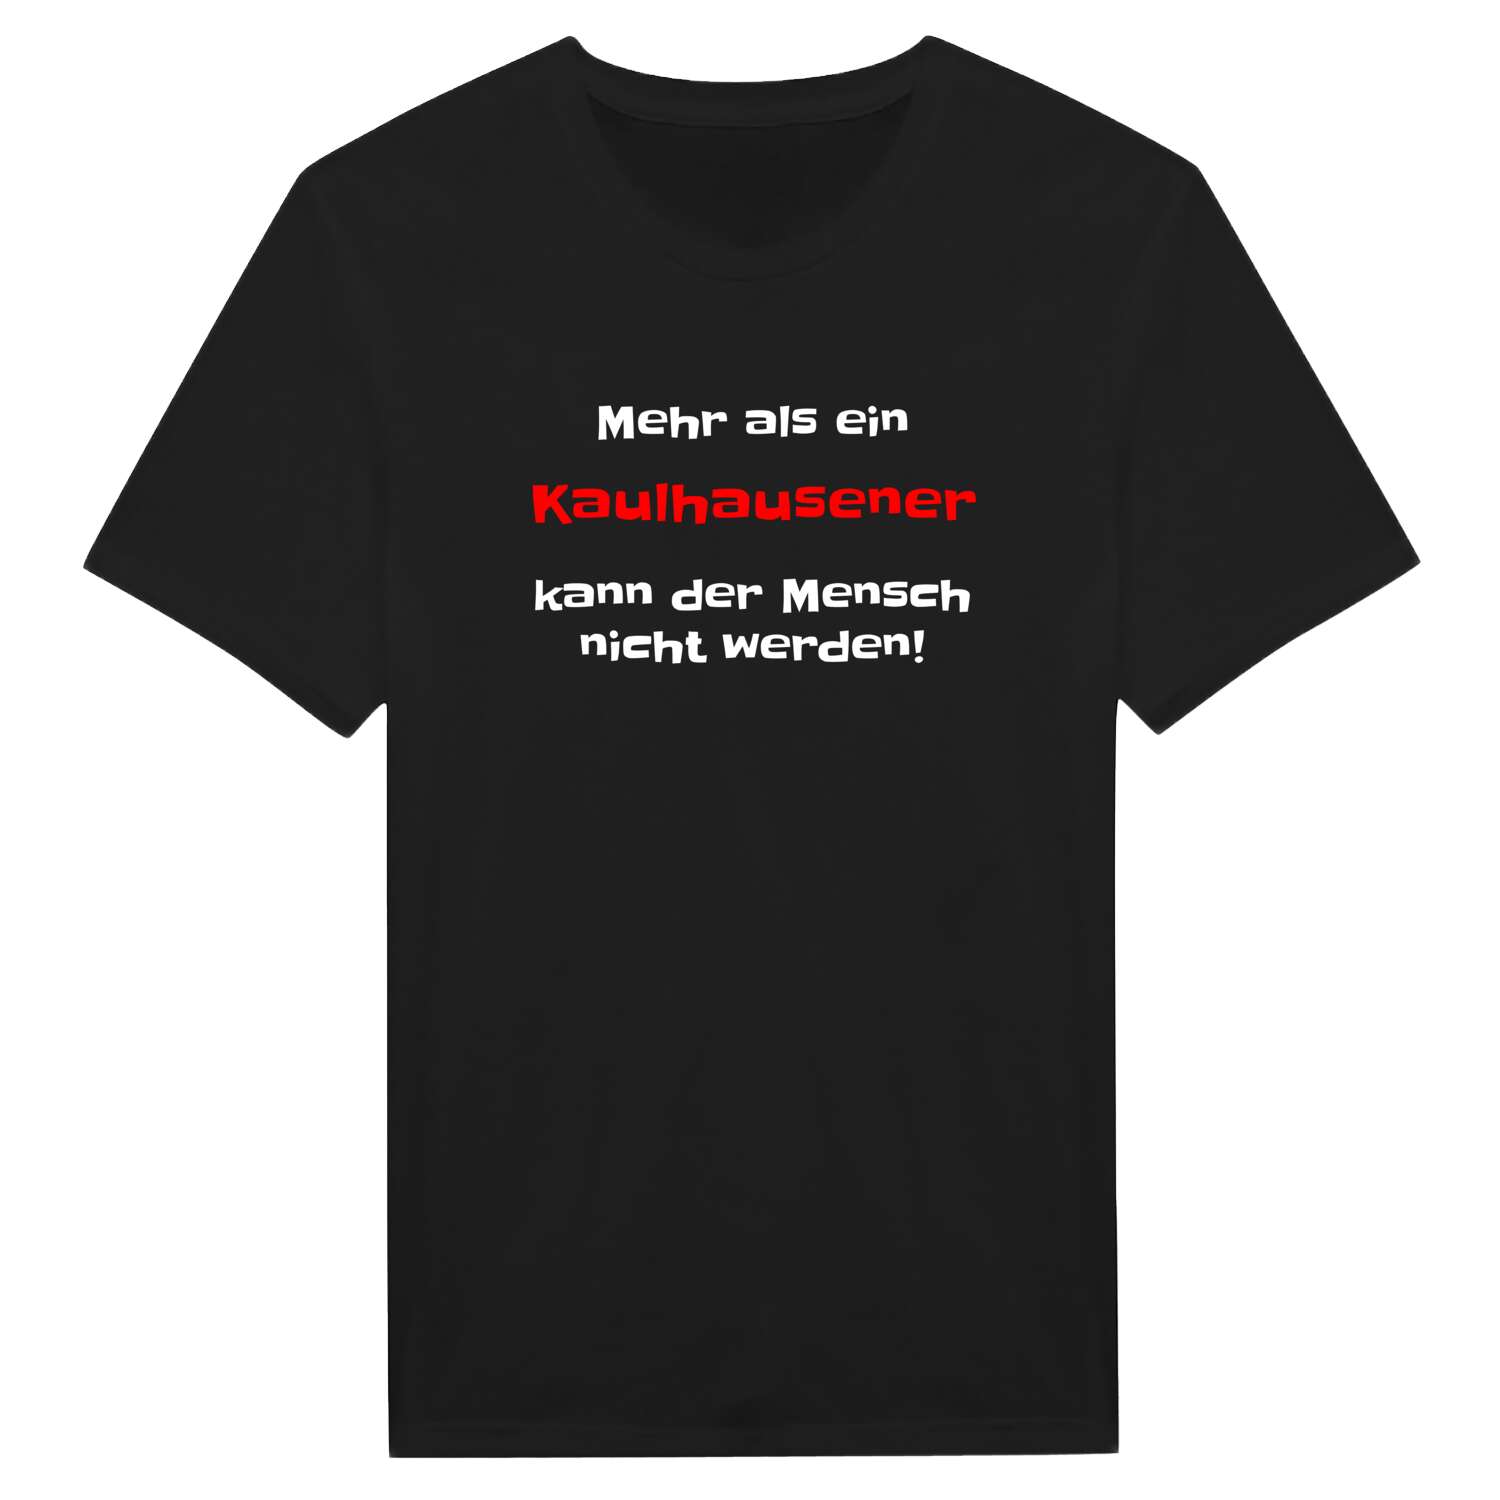 Kaulhausen T-Shirt »Mehr als ein«